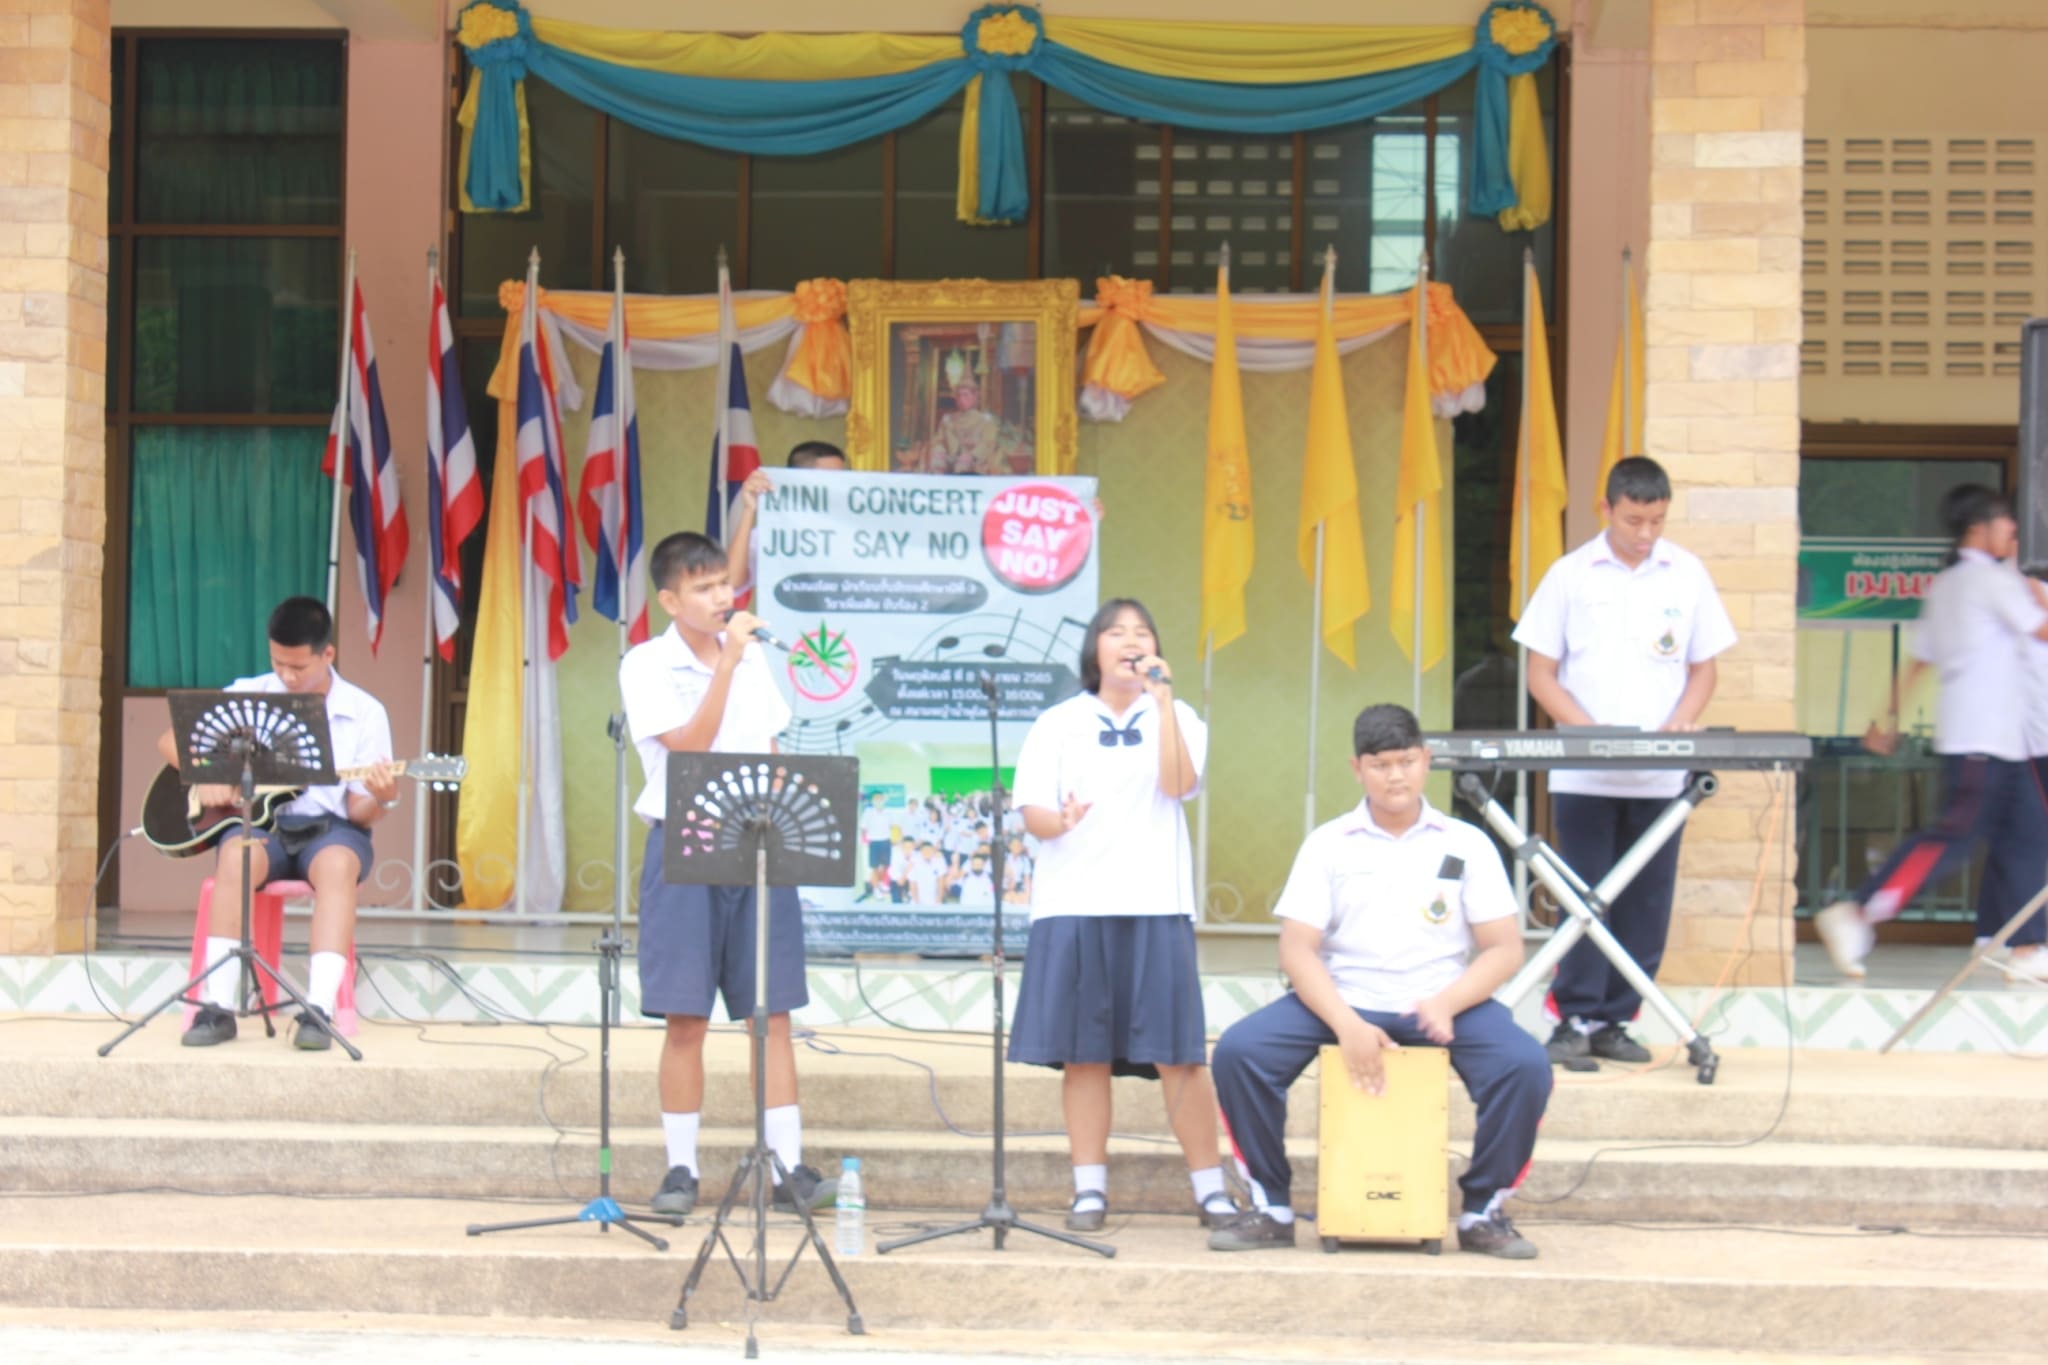  วันพฤหัสบดี ที่ 8 กันยายน 2565 กลุ่มสาระการเรียนรู้ศิลปะ โรงเรียนเฉลิมพระเกียรติสมเด็จพระศรีนครินทร์ ภูเก็ต จัดกิจกรรมแสดงดนตรี Mini concert just say no